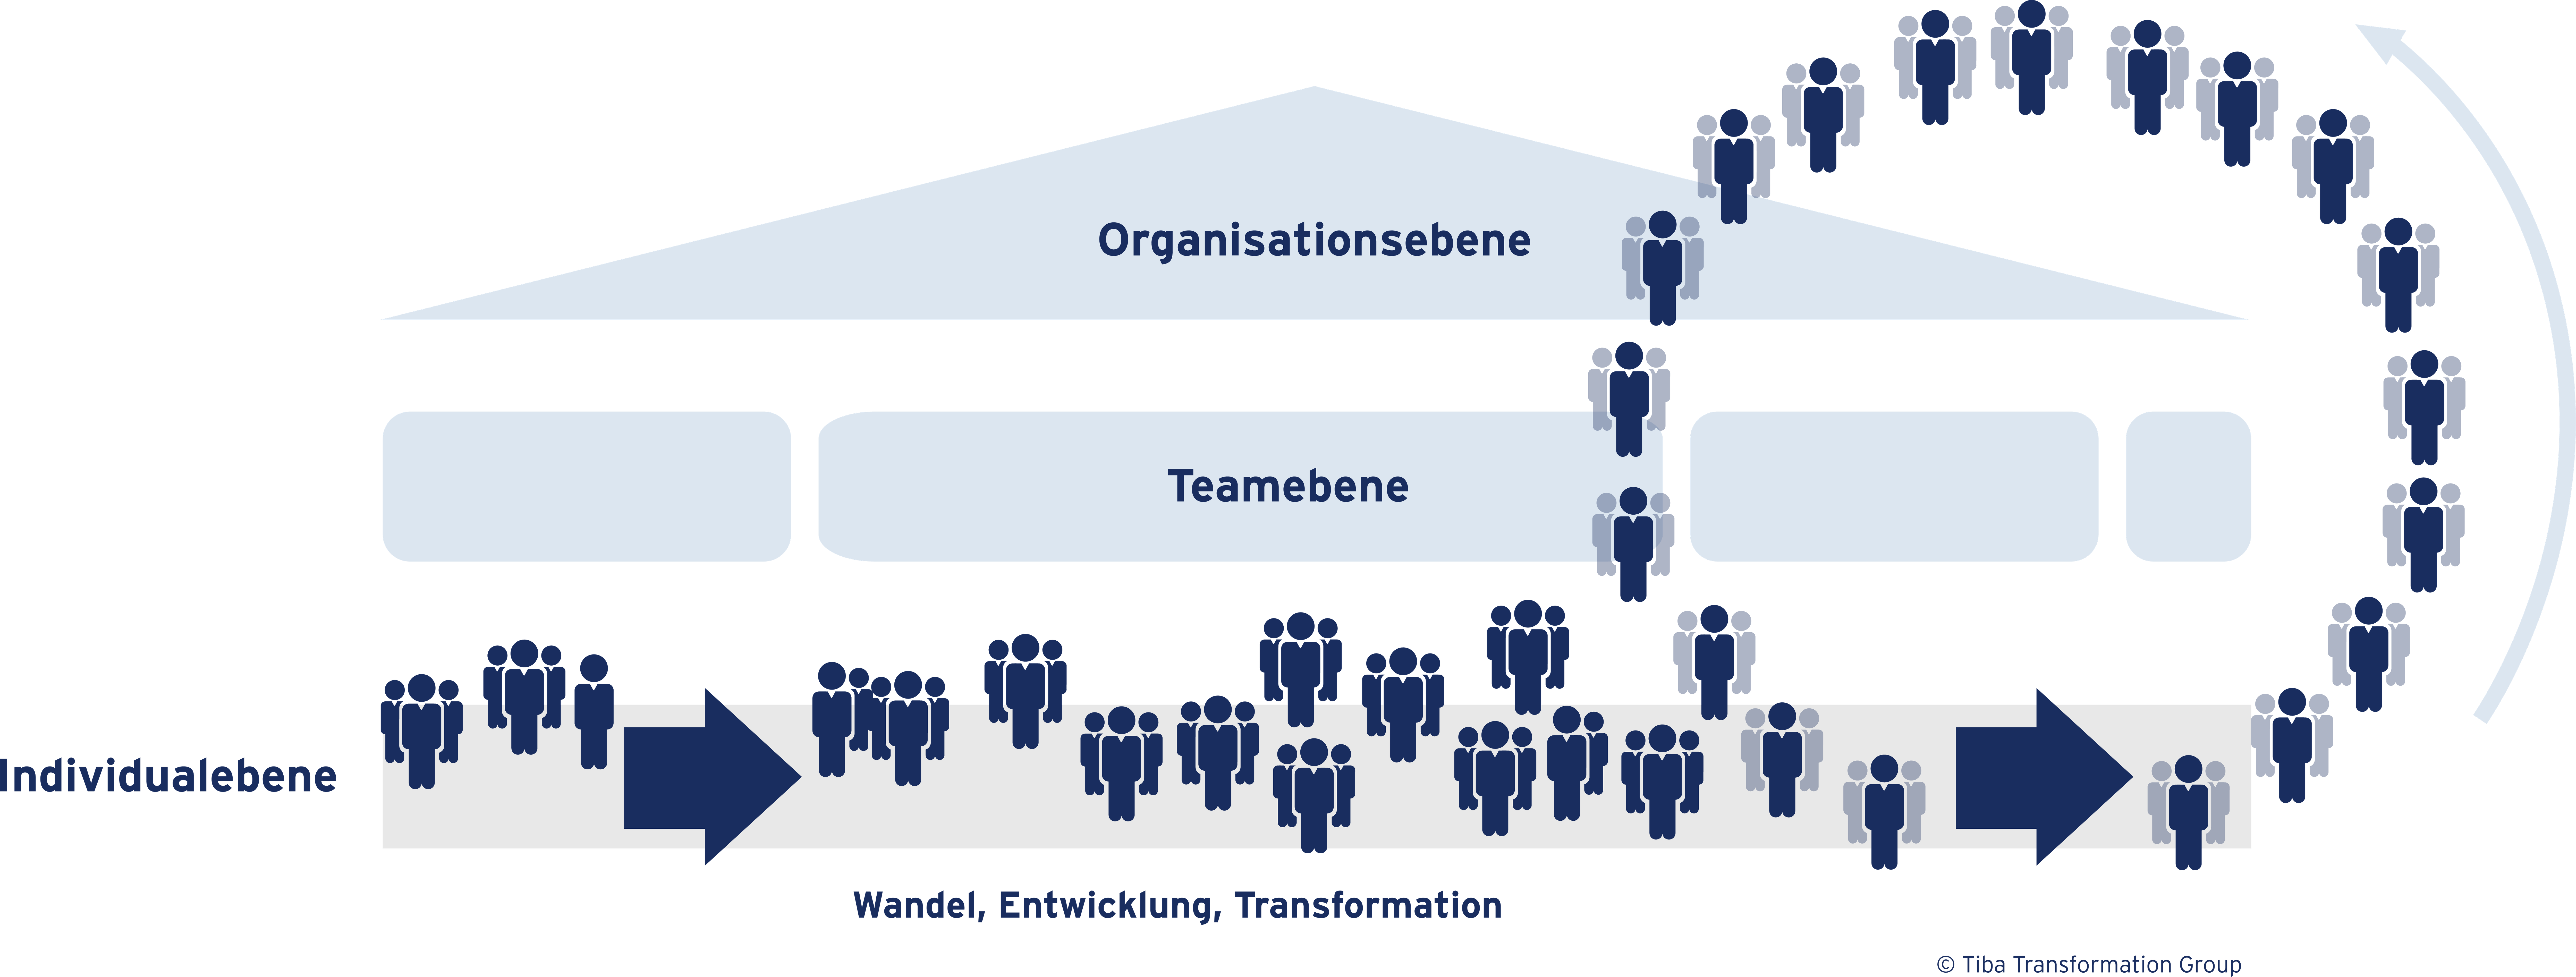 Grafik der Ebenen "Individualebene", "Teamebene" und "Organisationsebene"